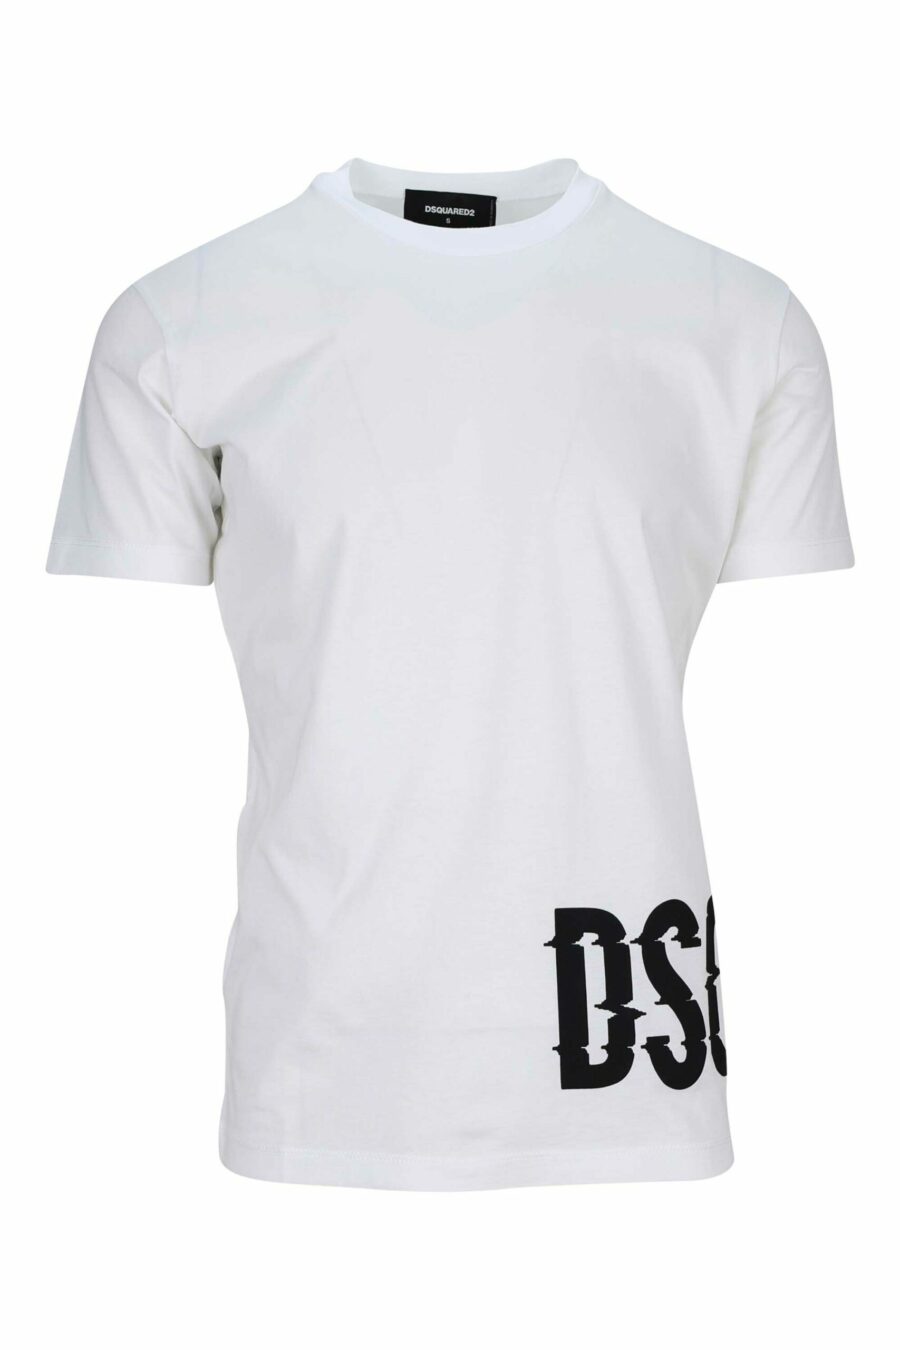 Camiseta blanca con maxilogo negro distorcionado bajo - 8054148332730 scaled